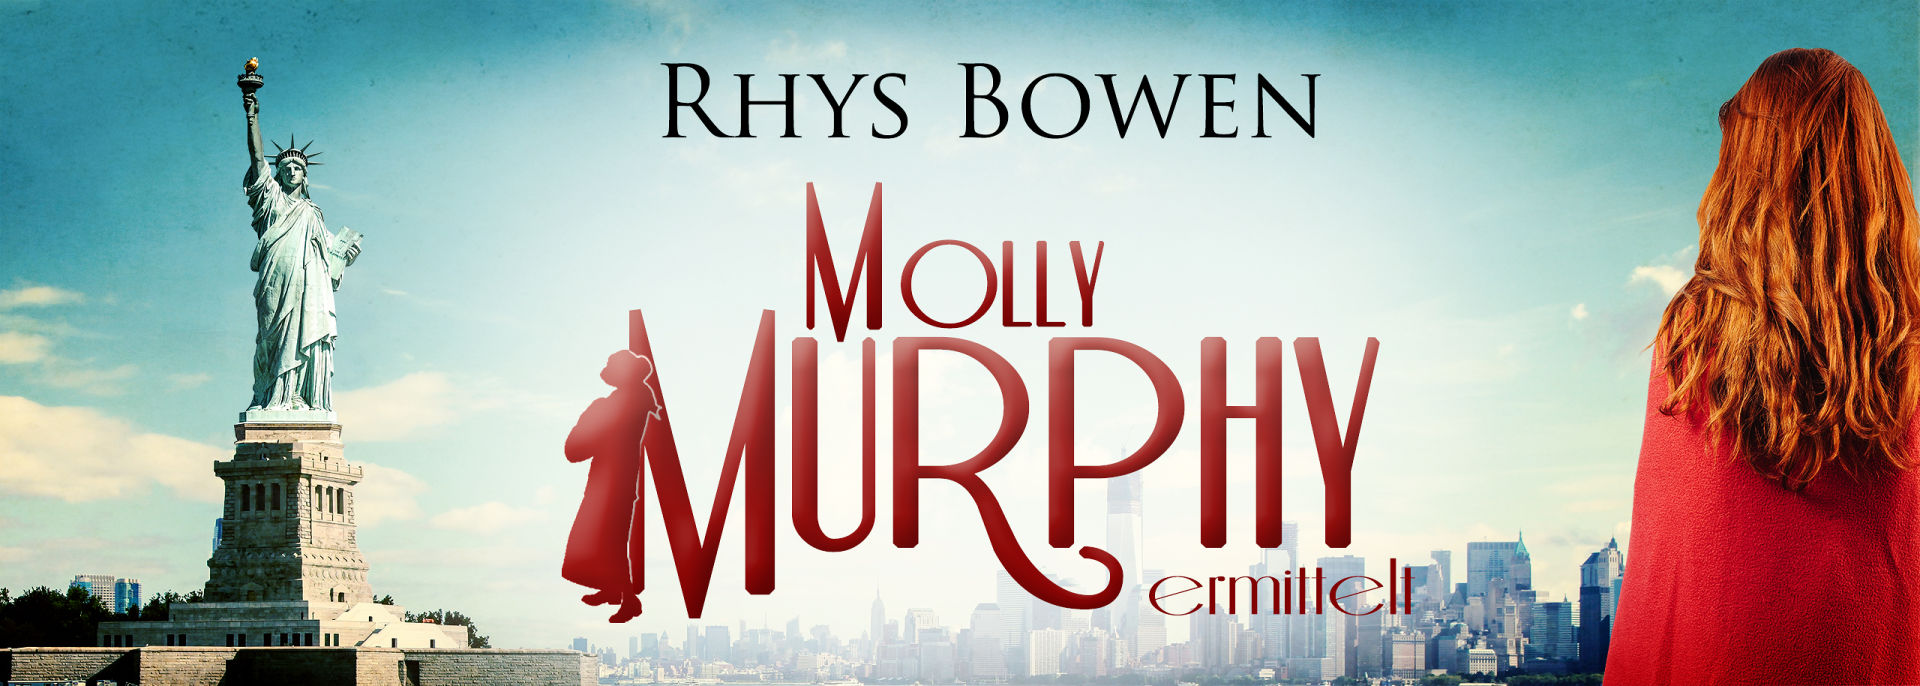 Molly Murphy ermittelt Serienteaser